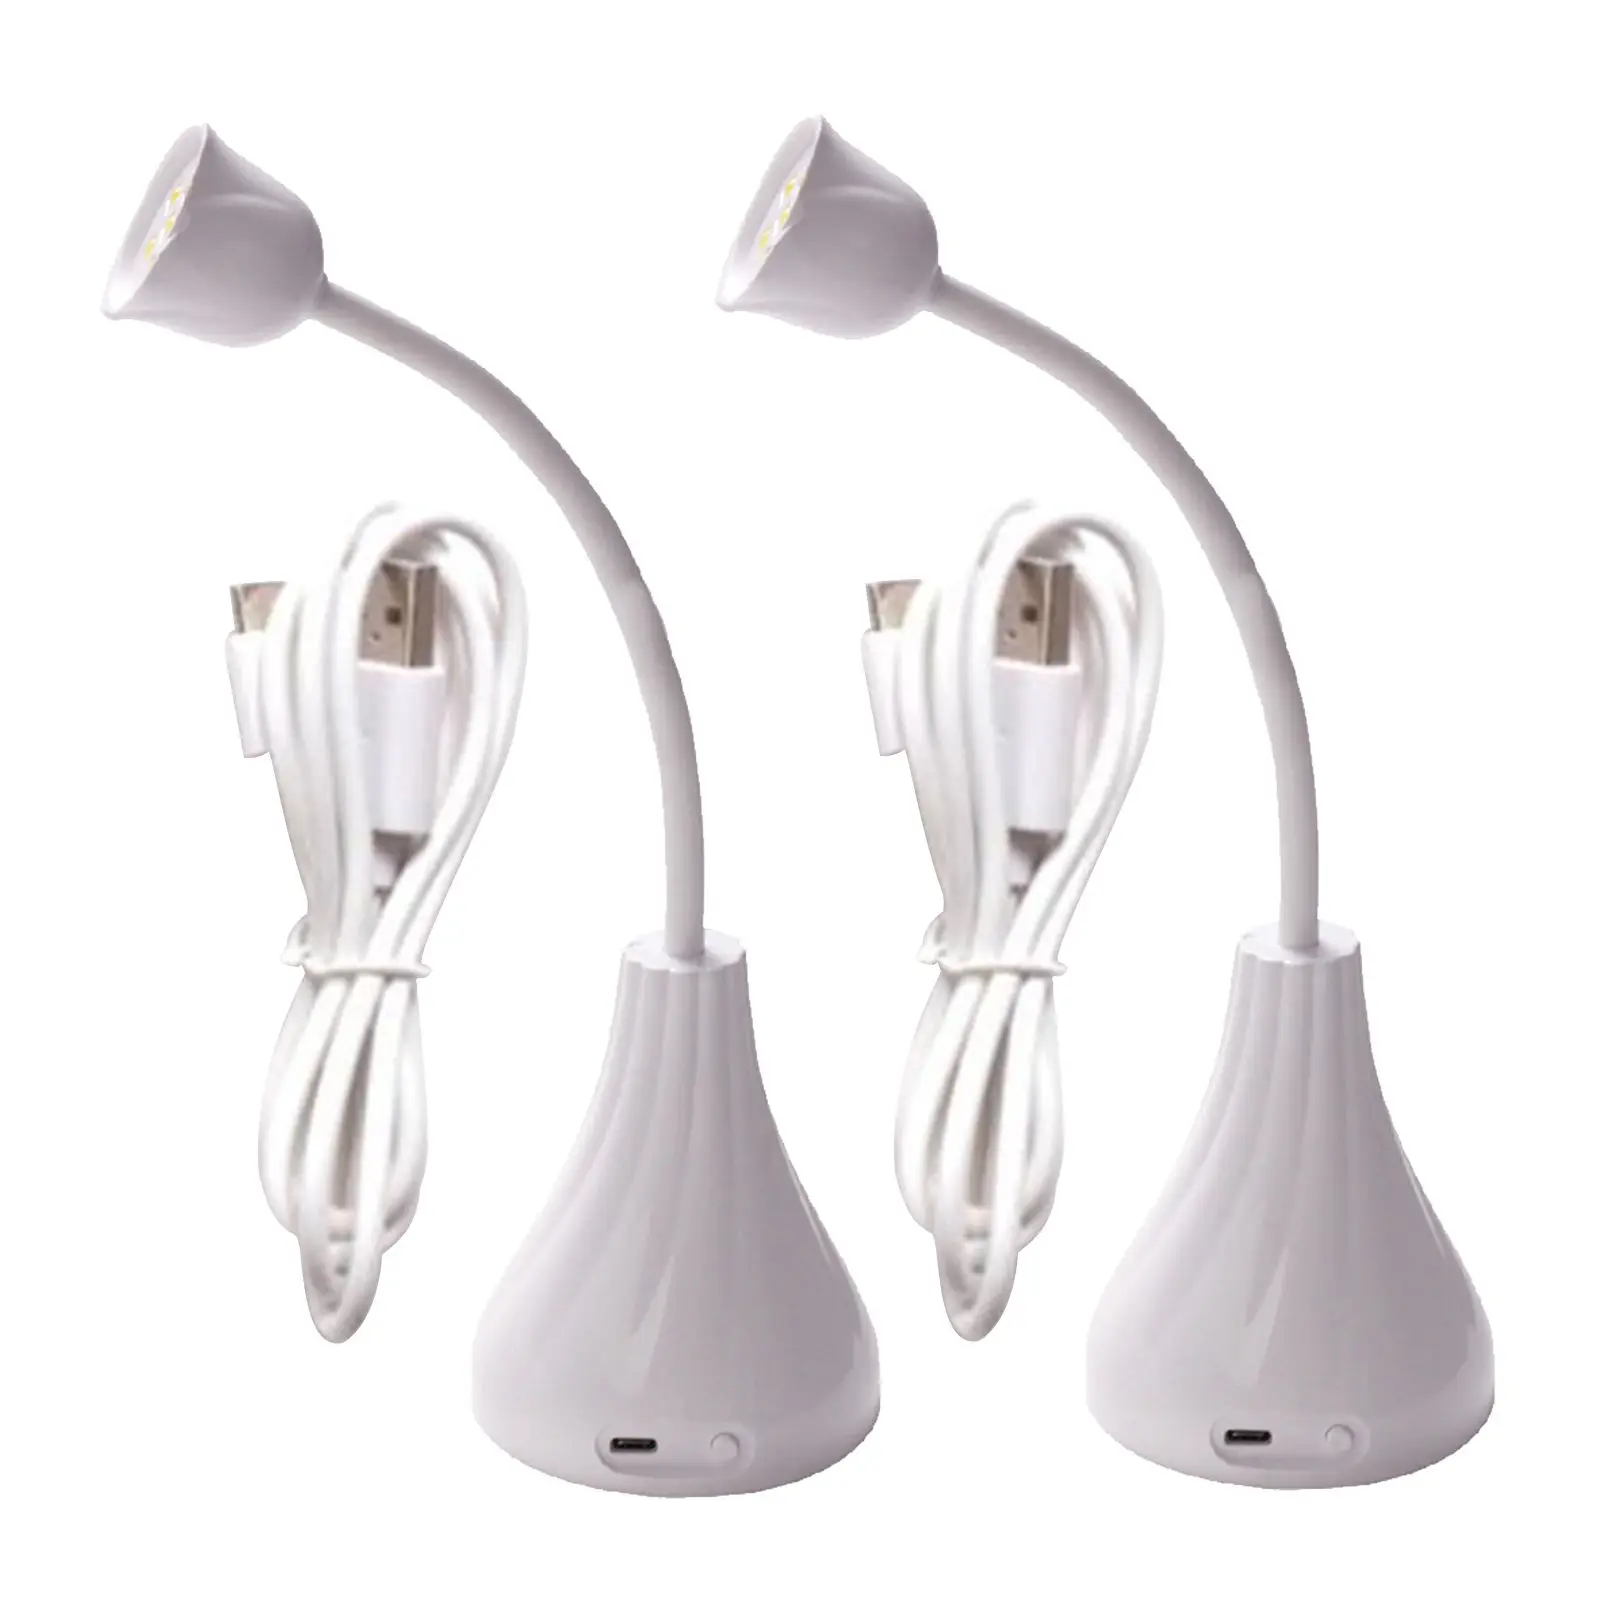 LED Nail Lamp, Professional Nail Dryer Gel Polish Light, Nail Polish Curing Gel LED Dryer, Professional Nail Art Tools